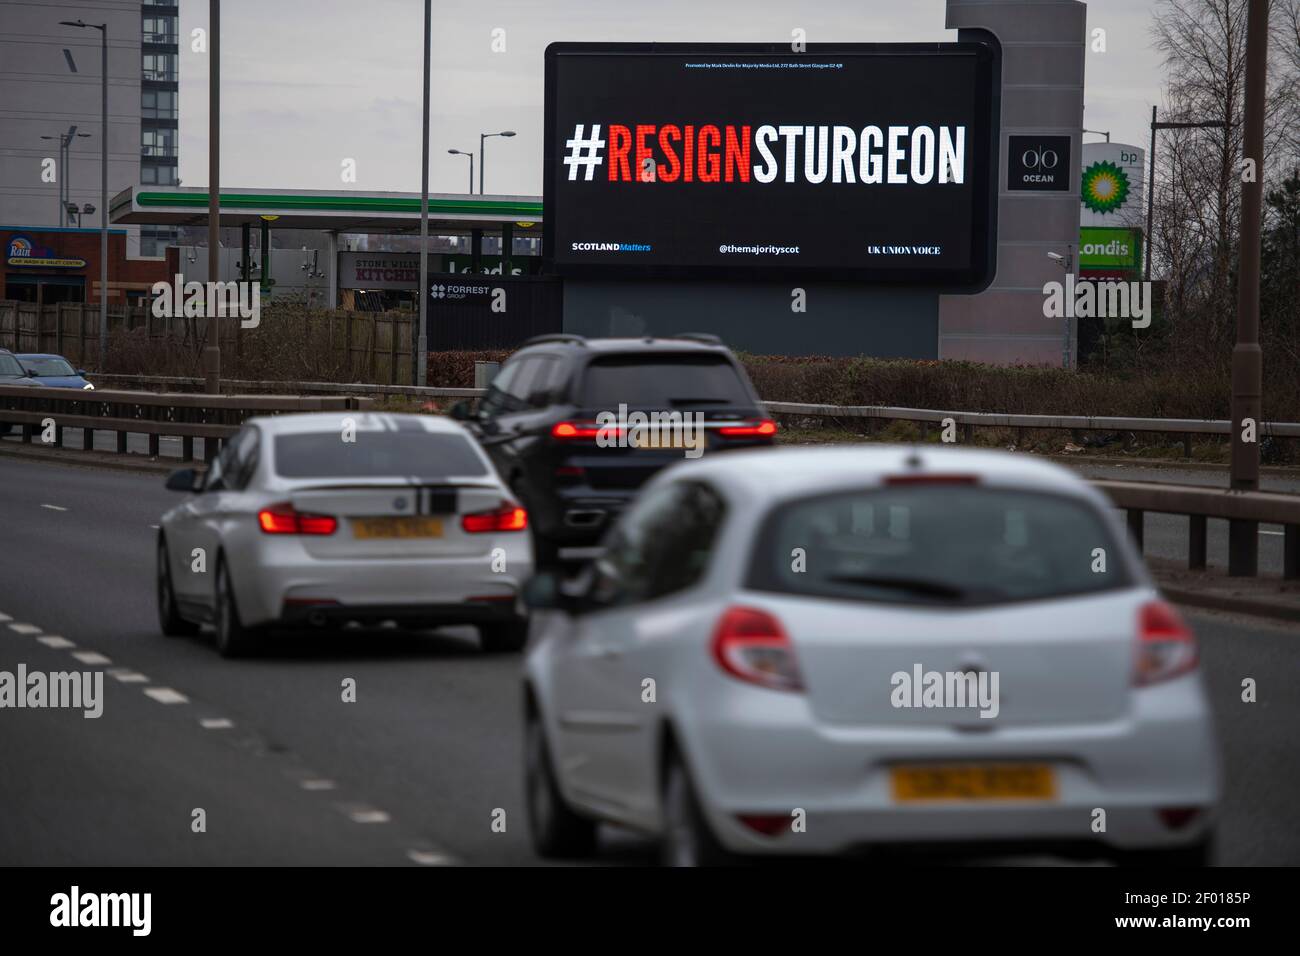 Glasgow, Schottland, Großbritannien. März 2021, 6th. Im Bild: Eine hohe digitale Plakatwand mit einer hell erleuchteten Botschaft, die sagt: „#RESIGNSTURGEON“. Die Majority​ startet mit Unterstützung von Scotland Matters, UK Union Voice und über 250 Gebern, die an einer Crowdfunding-Kampagne beteiligt waren, die ​#ResignSturgeon​-Kampagne, die erste einer Reihe von Kampagnen, die vor den schottischen Wahlen am 6th. Mai geführt wurden. Quelle: Colin Fisher/Alamy Live News Stockfoto